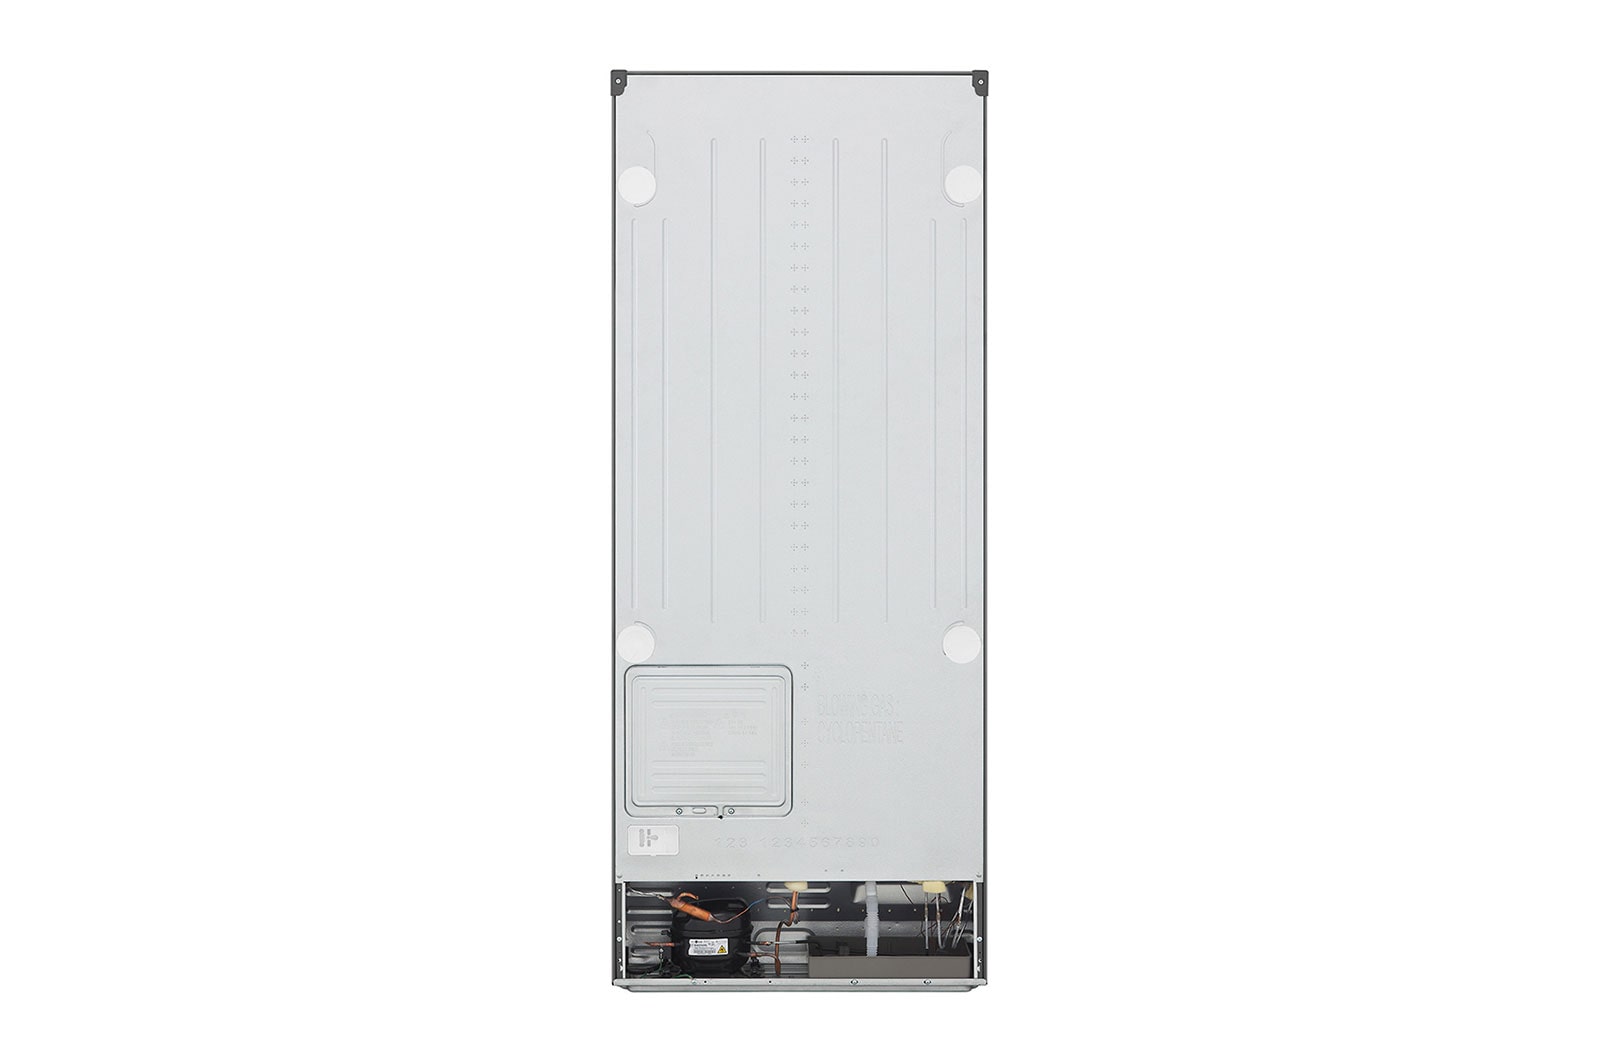 LG Smart Inverter 394L Tủ lạnh ngăn đá trên với công nghệ Hygiene Fresh (Bạc), hình từ đằng sau, GN-D392PSA